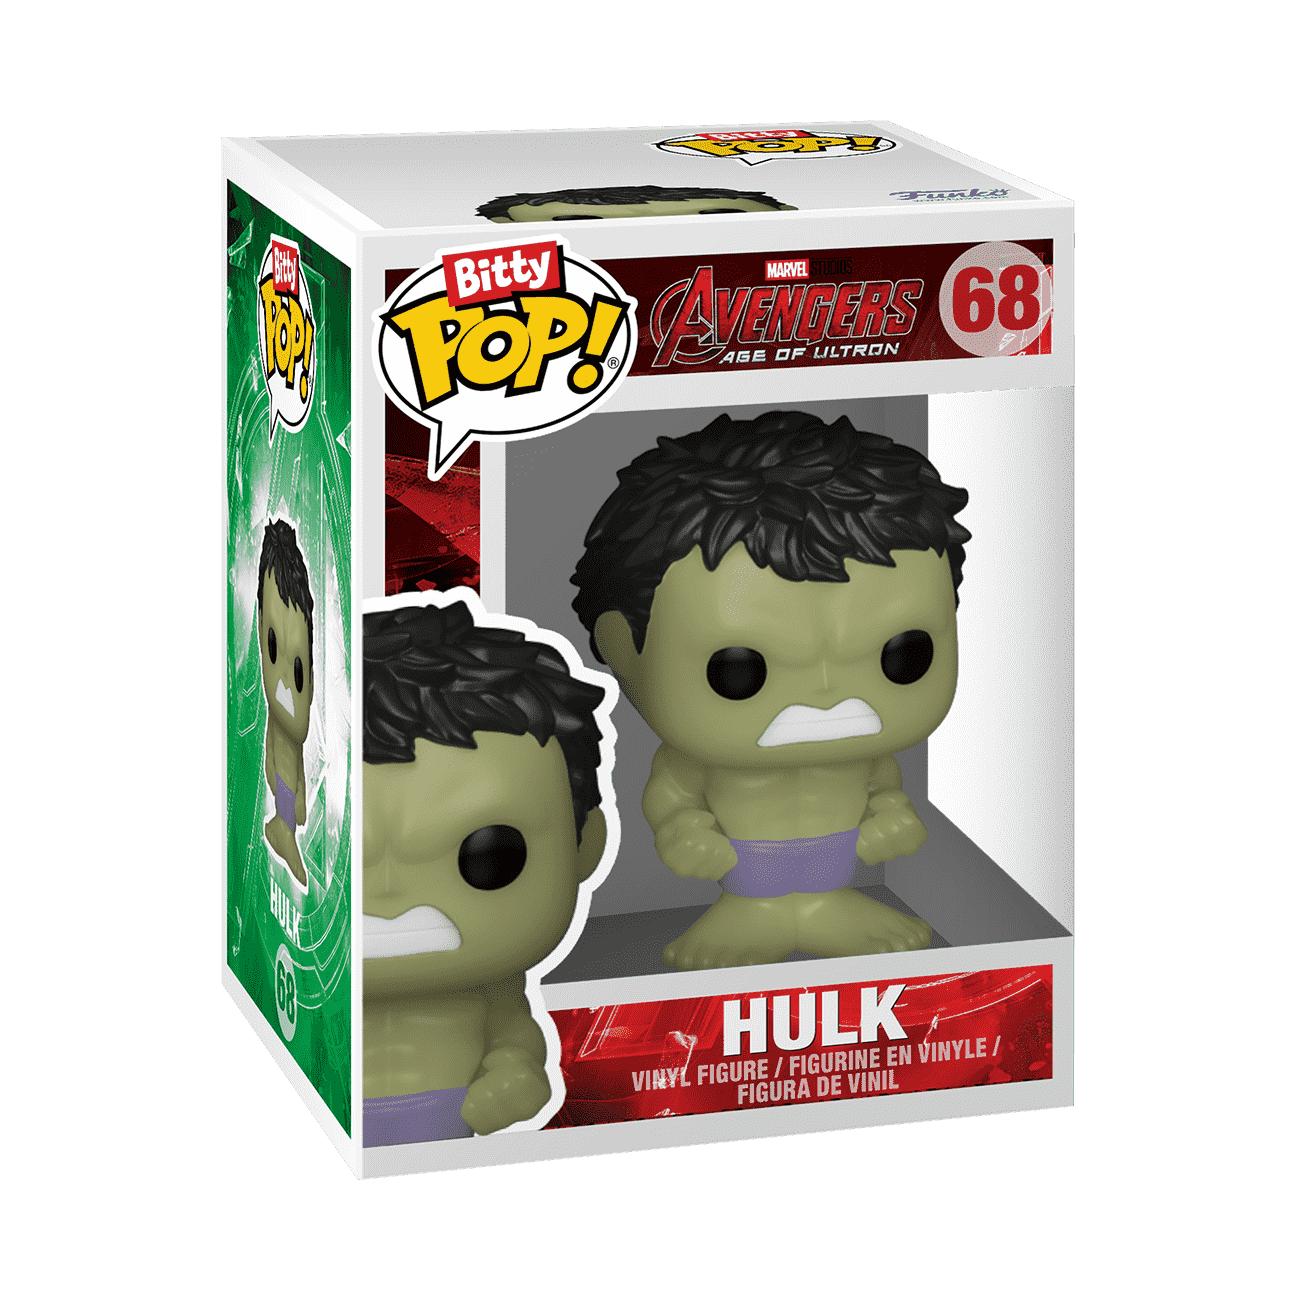 Buy Popsies Hulk at Funko.